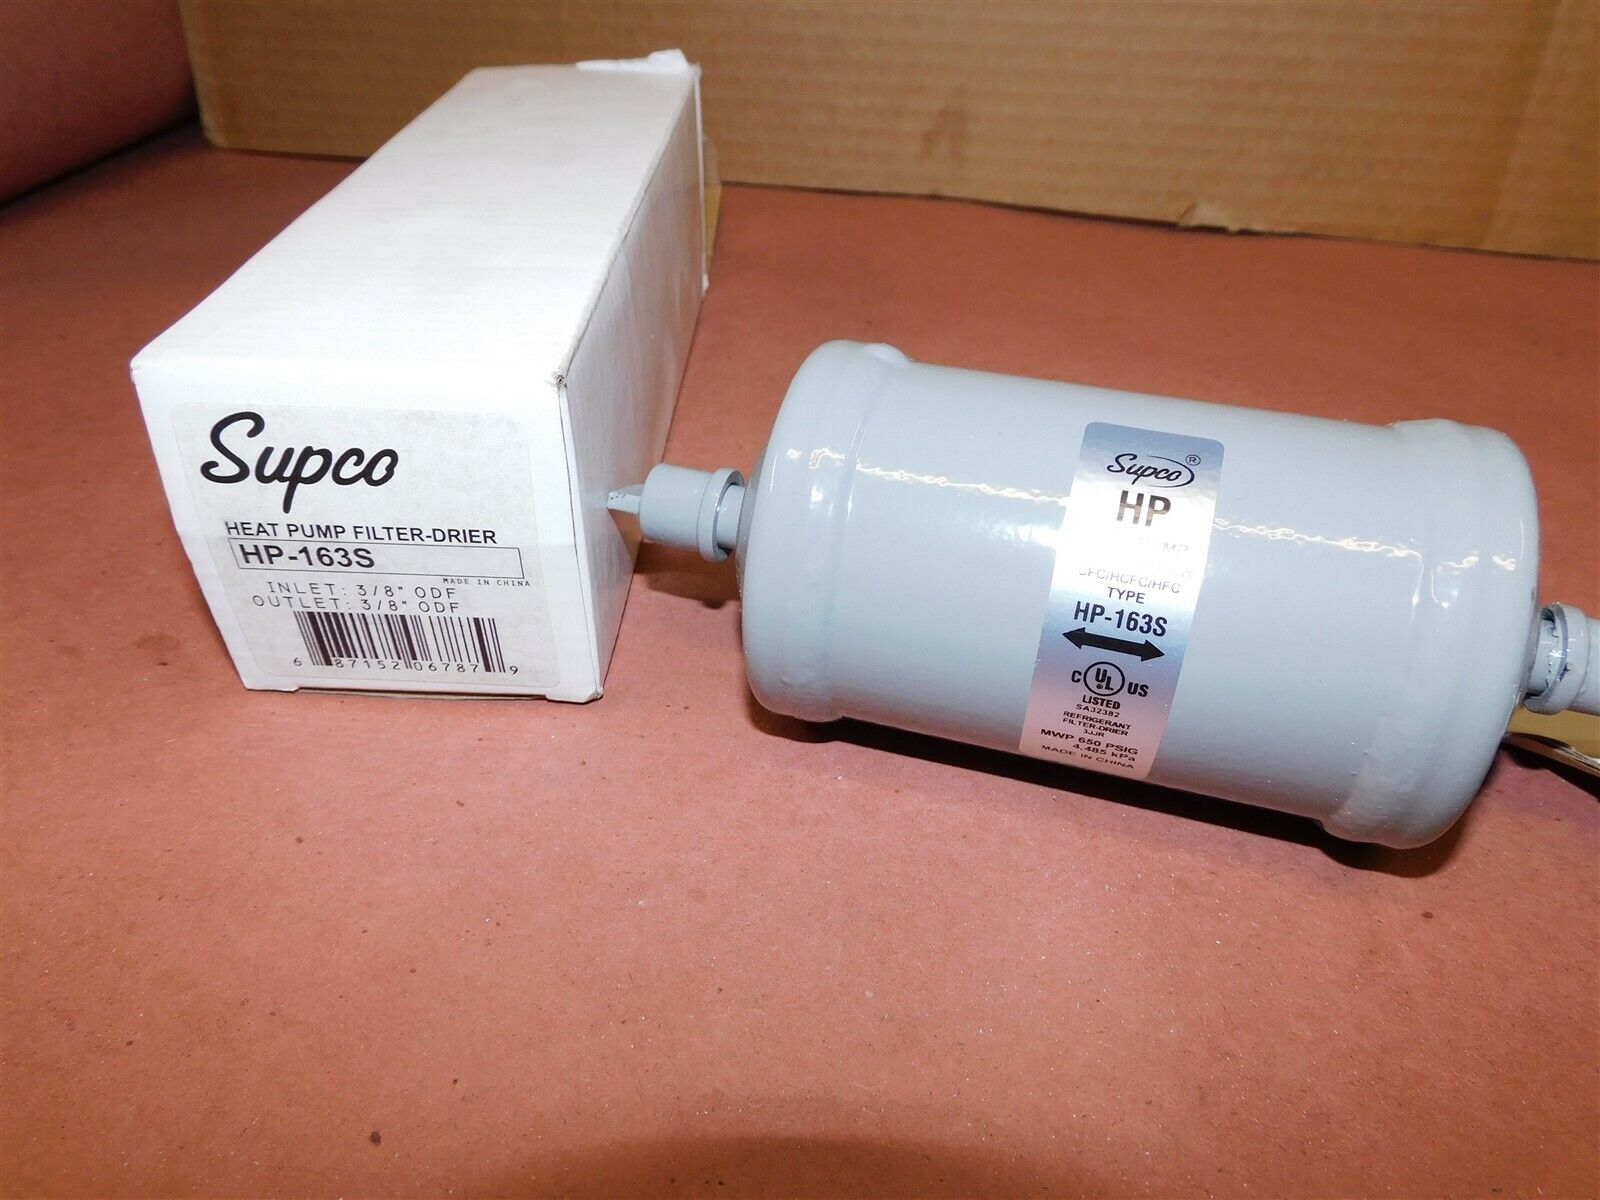 Supco HP-163S Biflow Heat Pump Filter Dryer 3/8